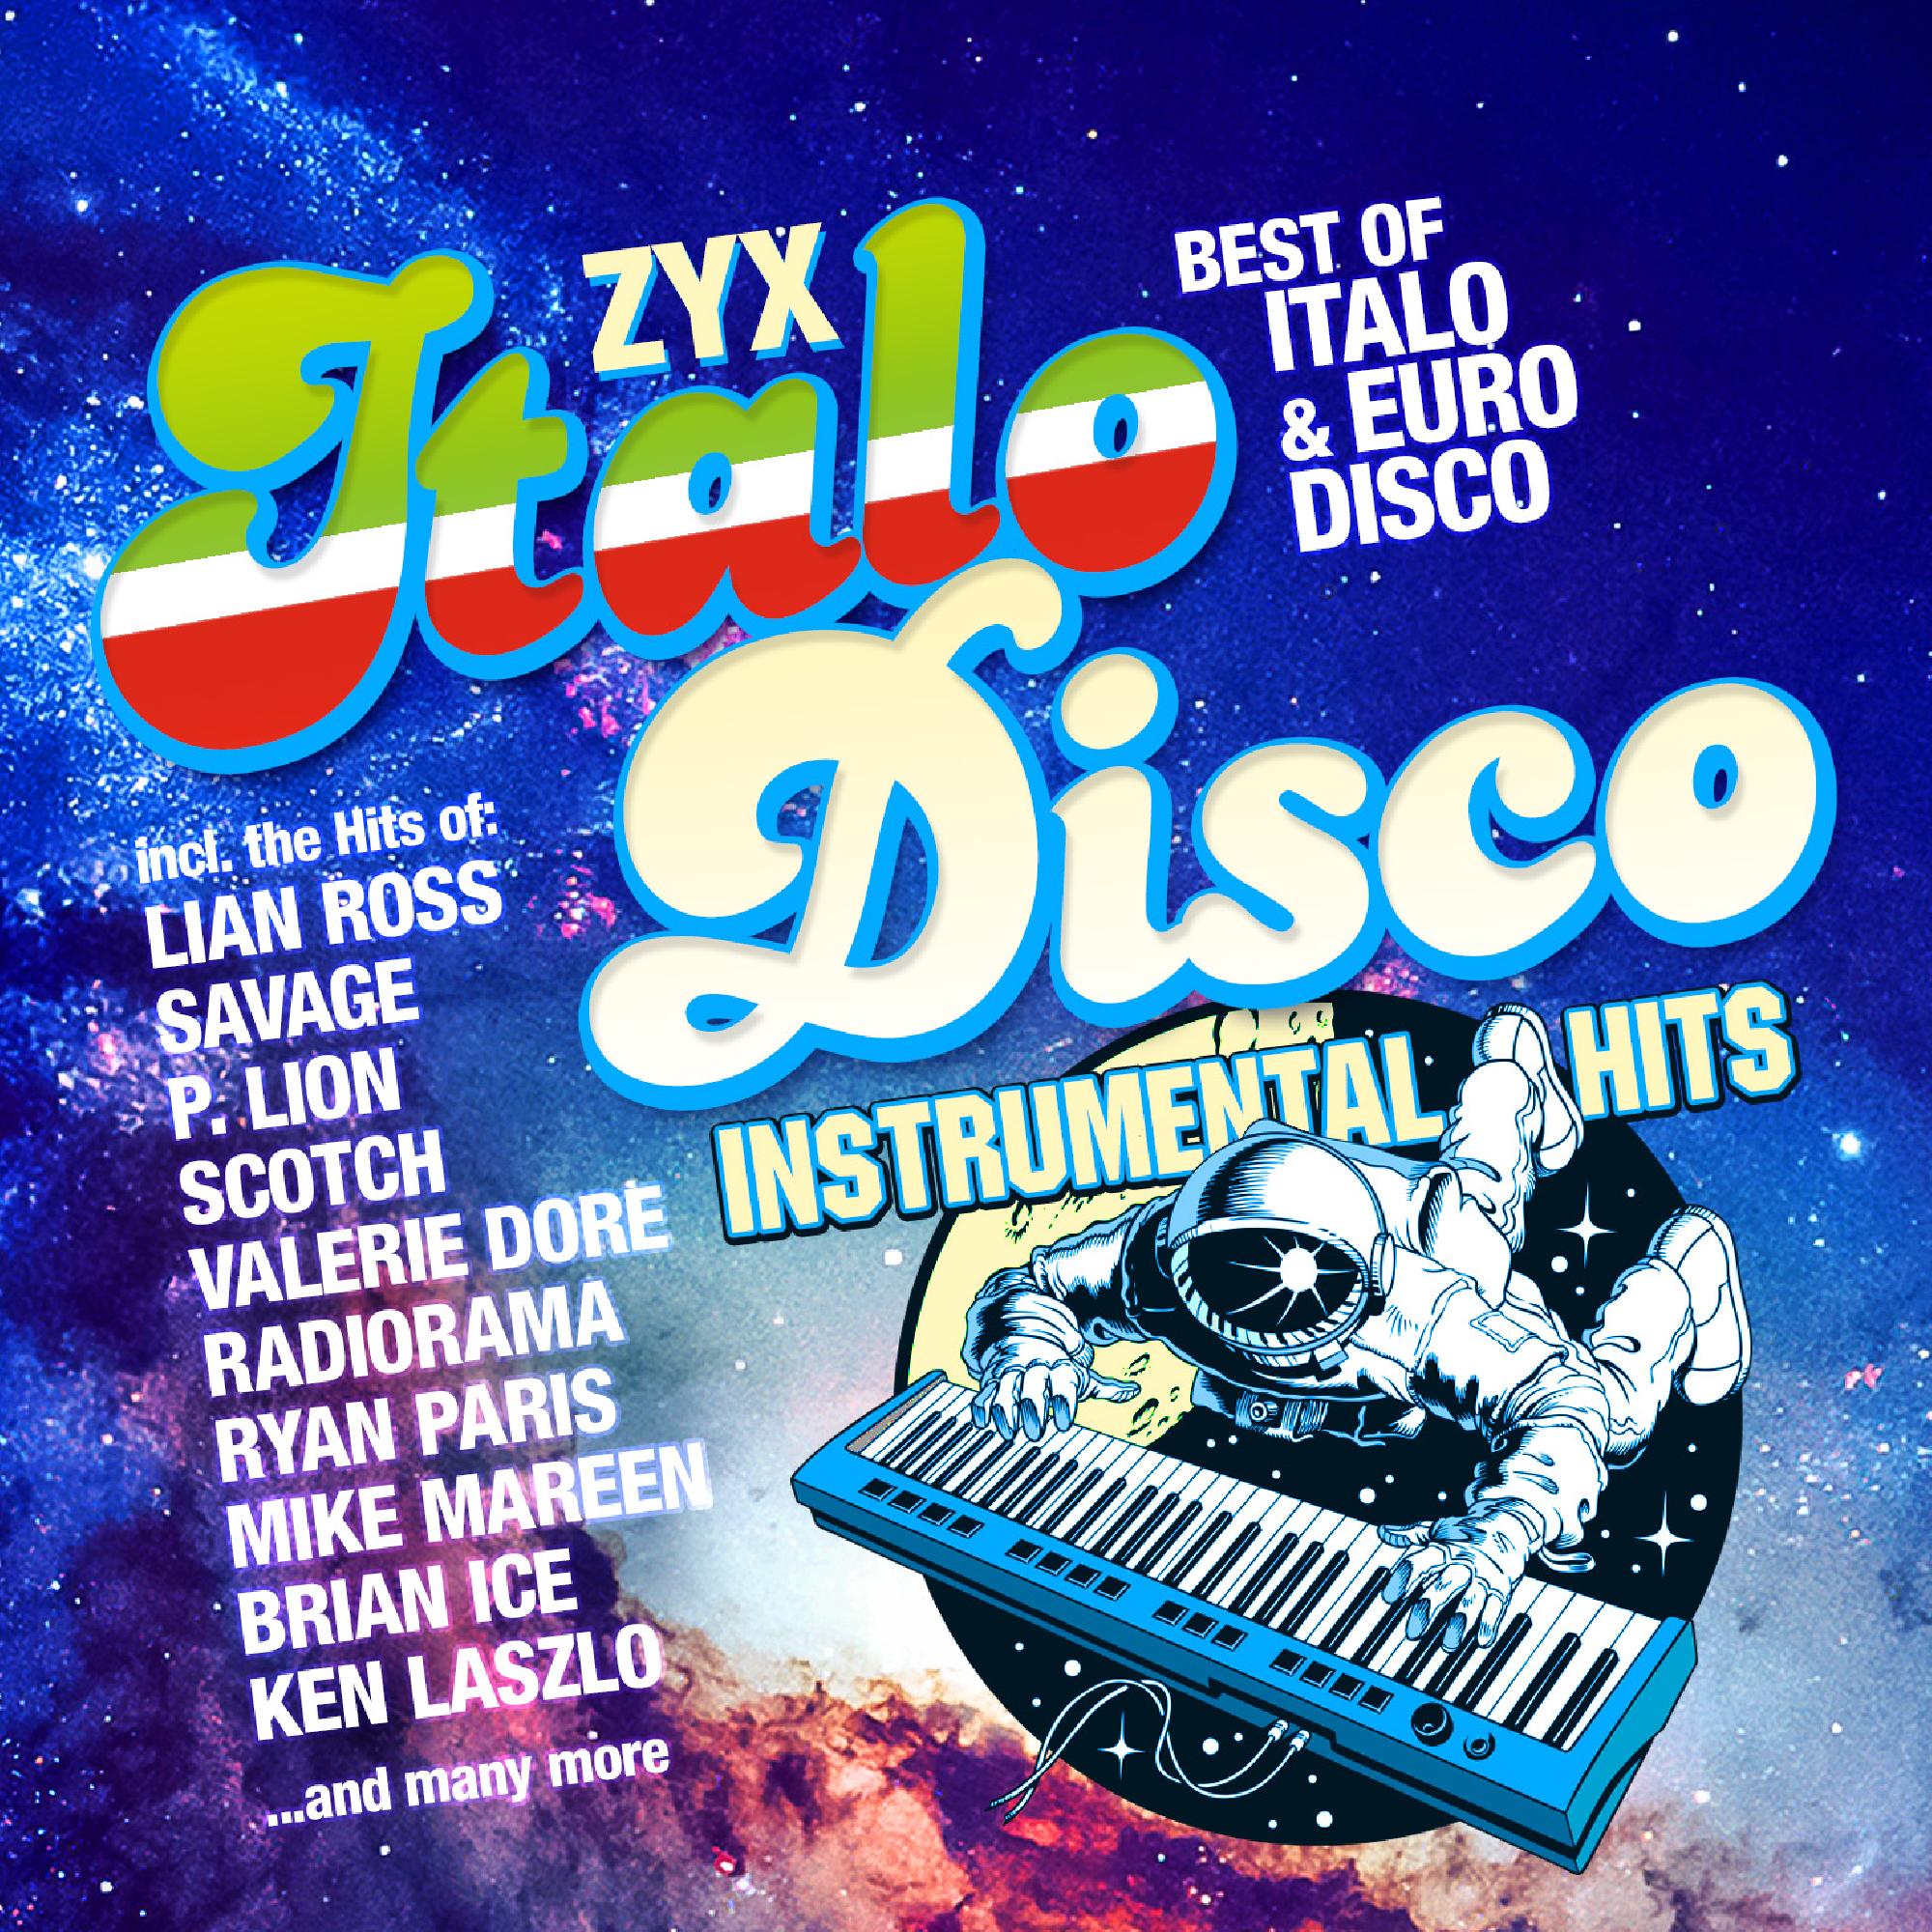 New disco hits. Итало диско. Итало диско итало диско. ZYX Italo Disco Hits. Итало диско фото.